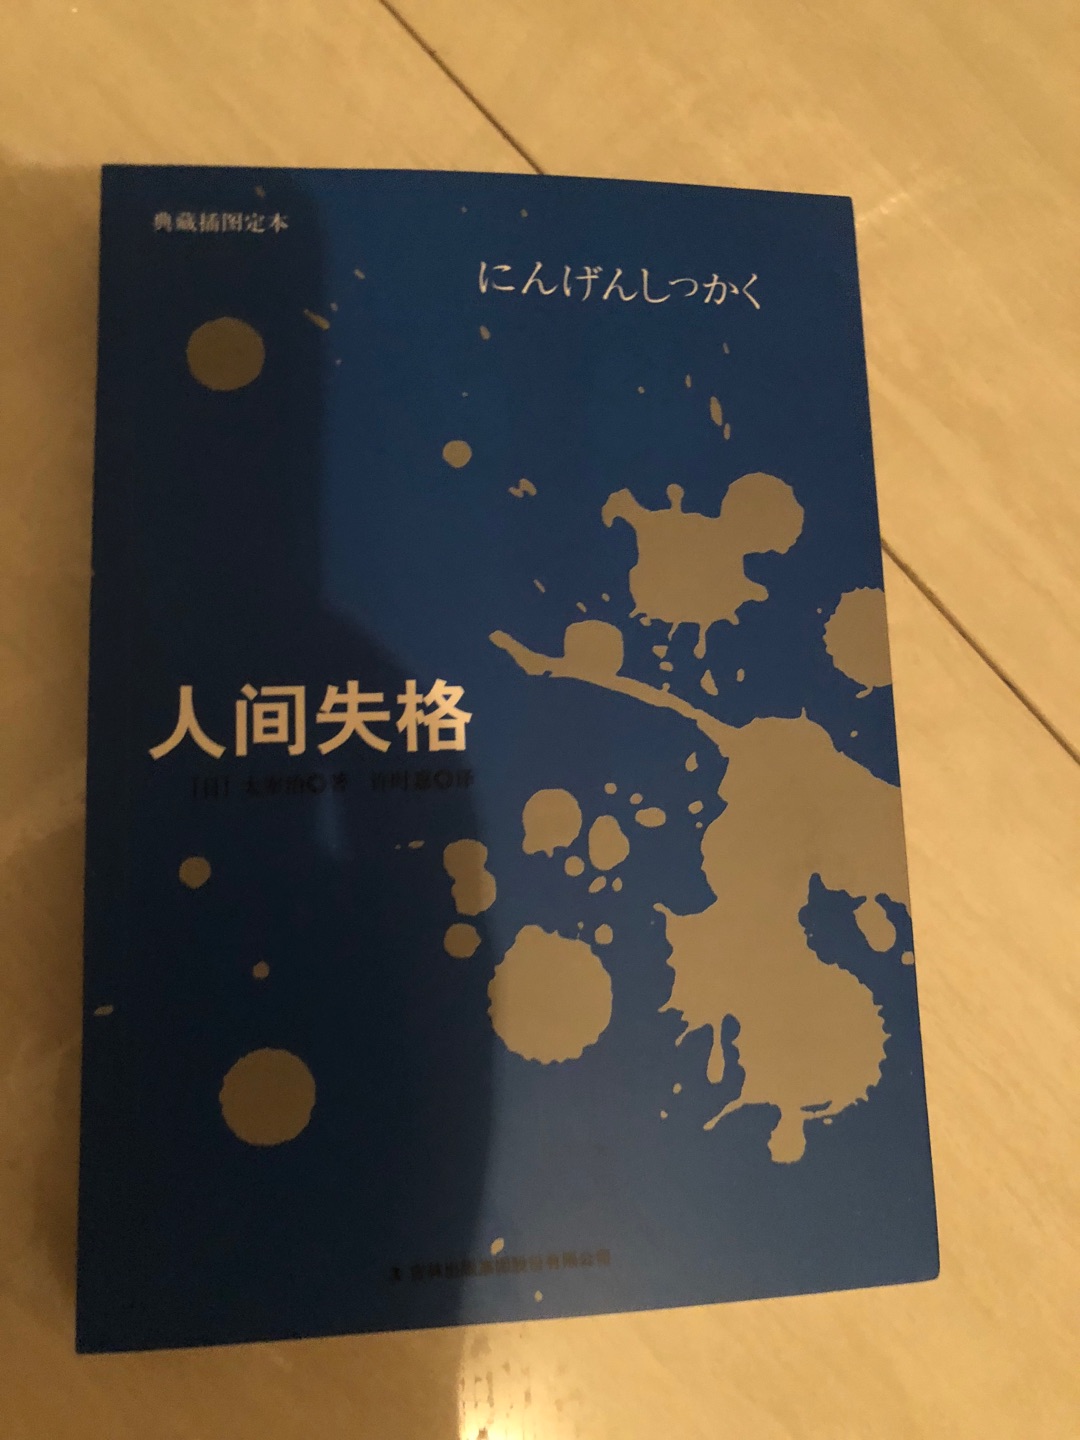 非常好，很厚，拜读一下日本文学极客 太宰治作品！